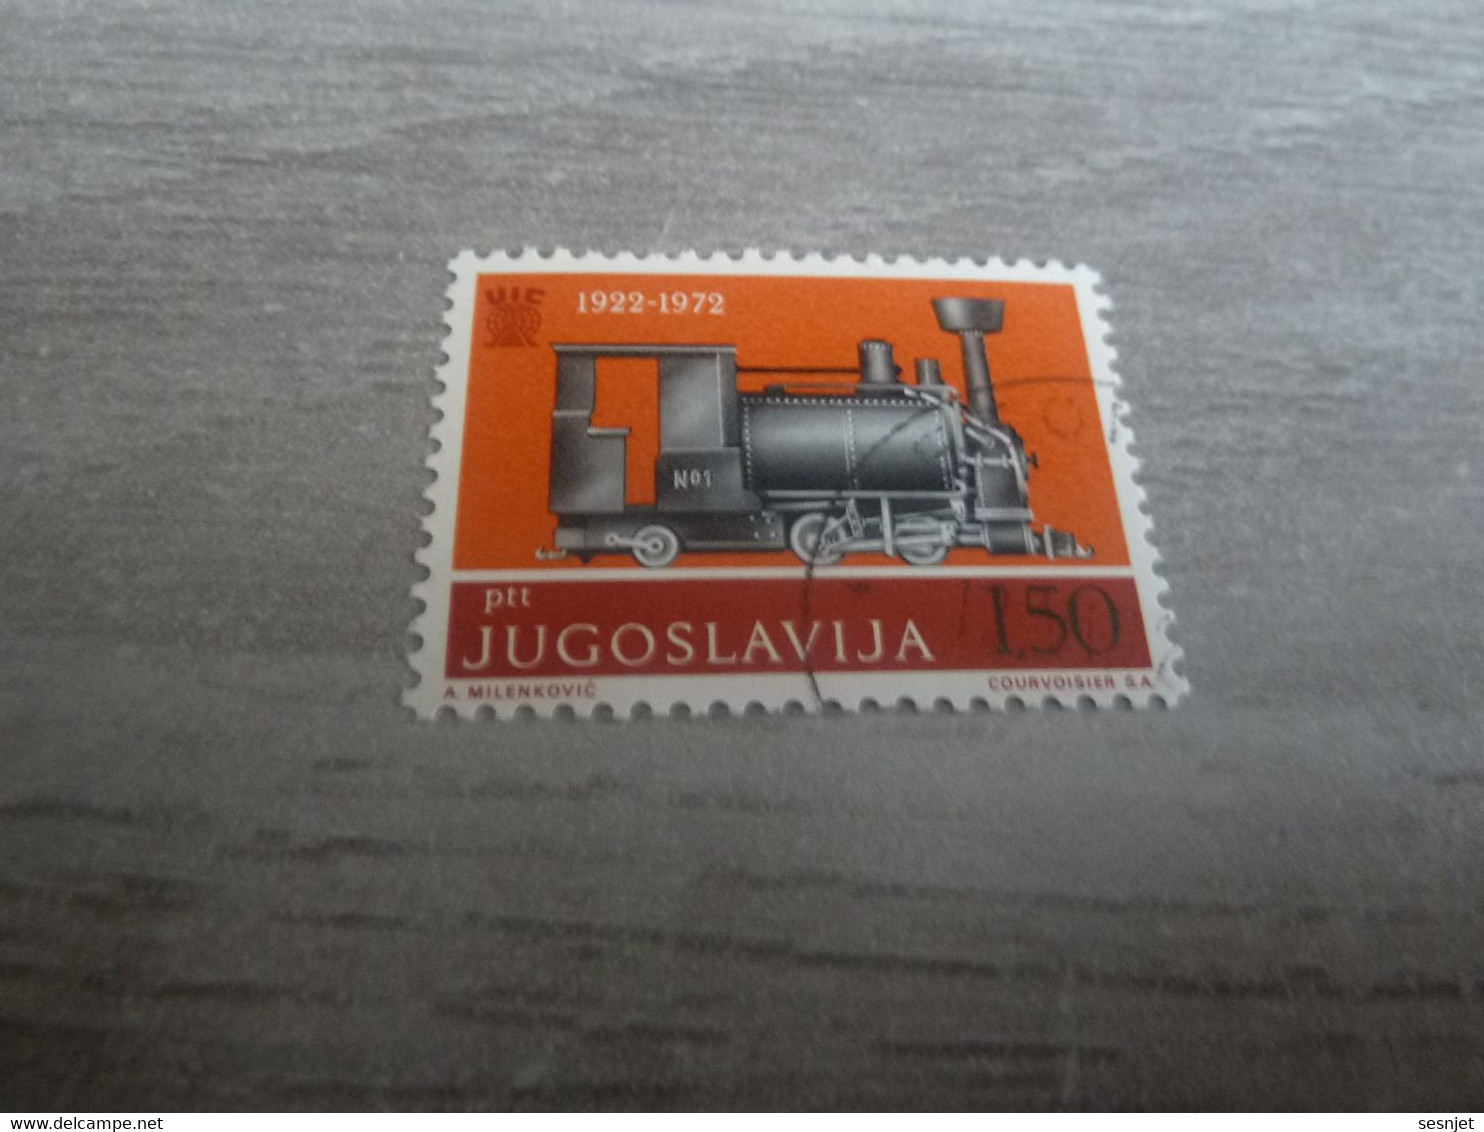 Ptt - Jugoslavija - U.I.T. - Val 1.50 - Multicolore - Oblitéré - Année 1972 - - Used Stamps